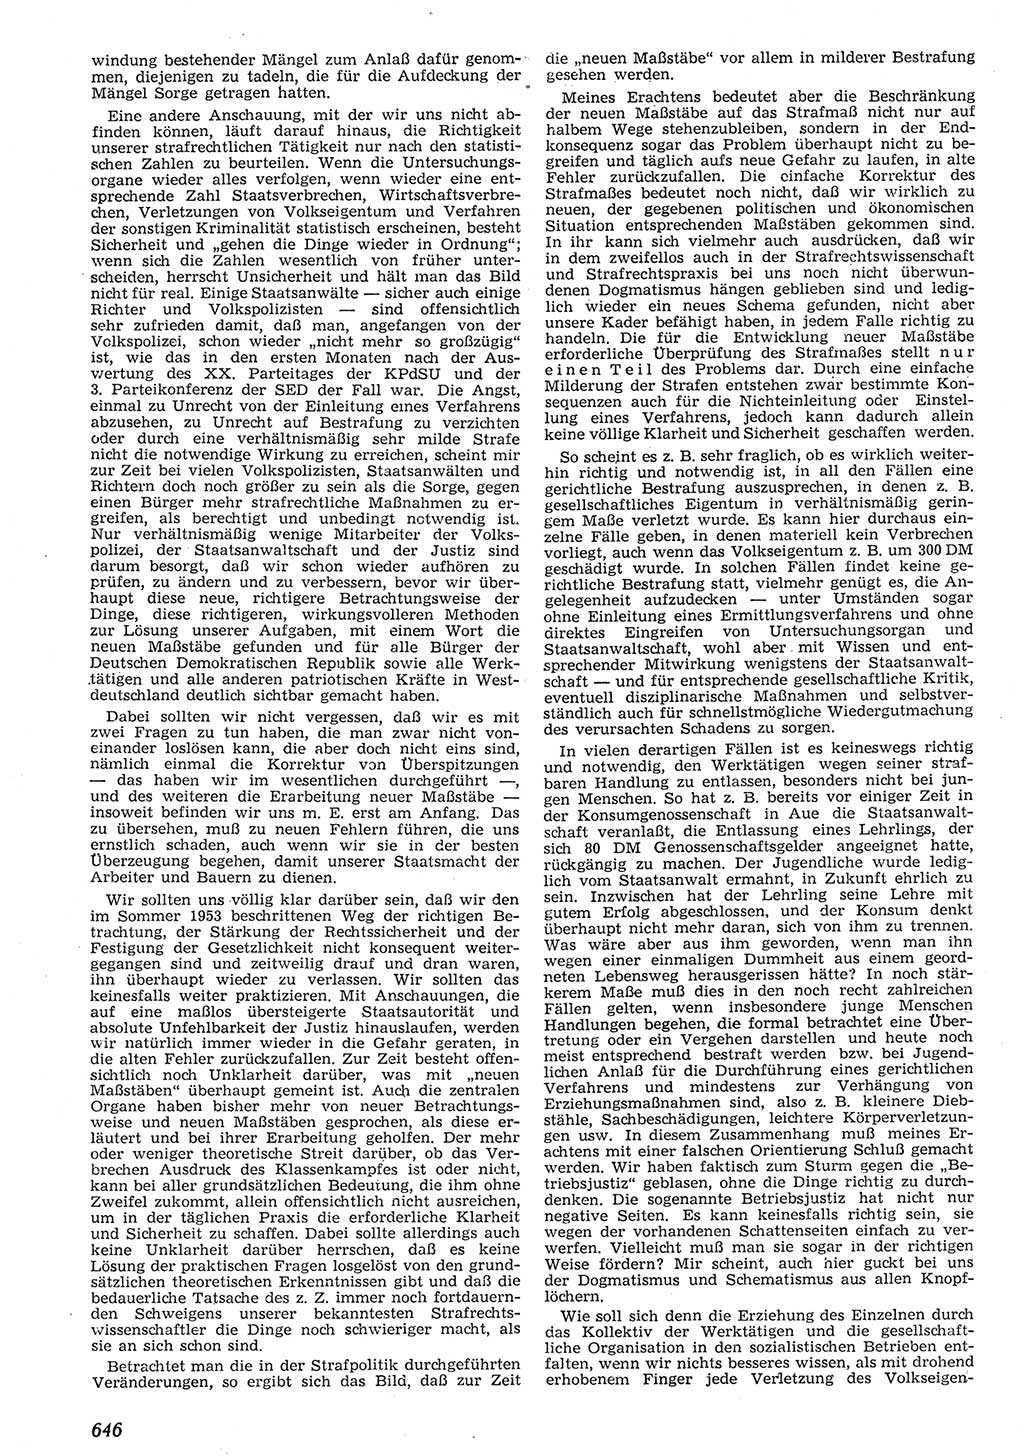 Neue Justiz (NJ), Zeitschrift für Recht und Rechtswissenschaft [Deutsche Demokratische Republik (DDR)], 10. Jahrgang 1956, Seite 646 (NJ DDR 1956, S. 646)